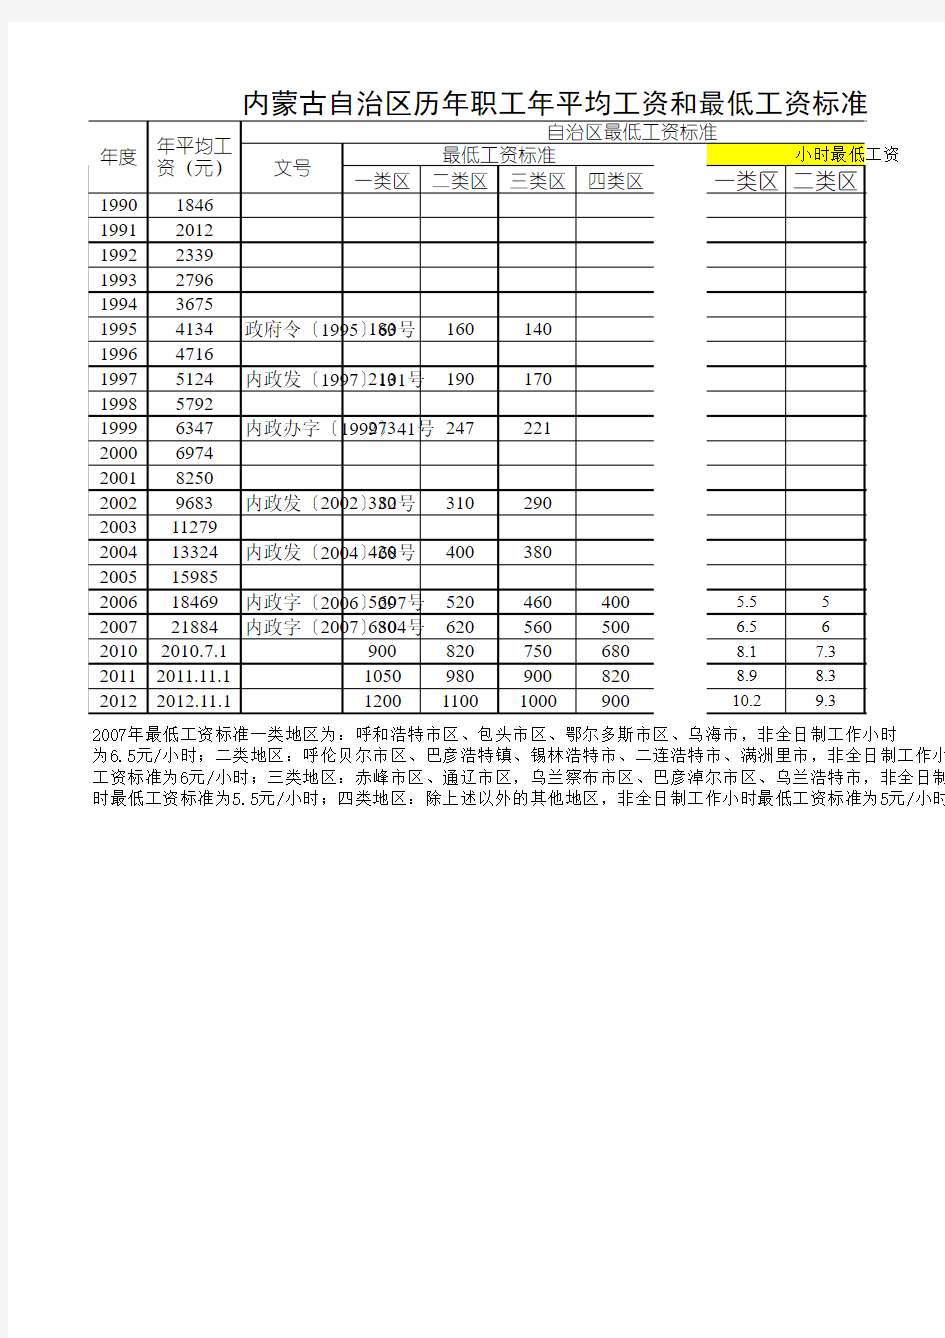 1995-2013年内蒙古职工最低工资标准(含小时工资)